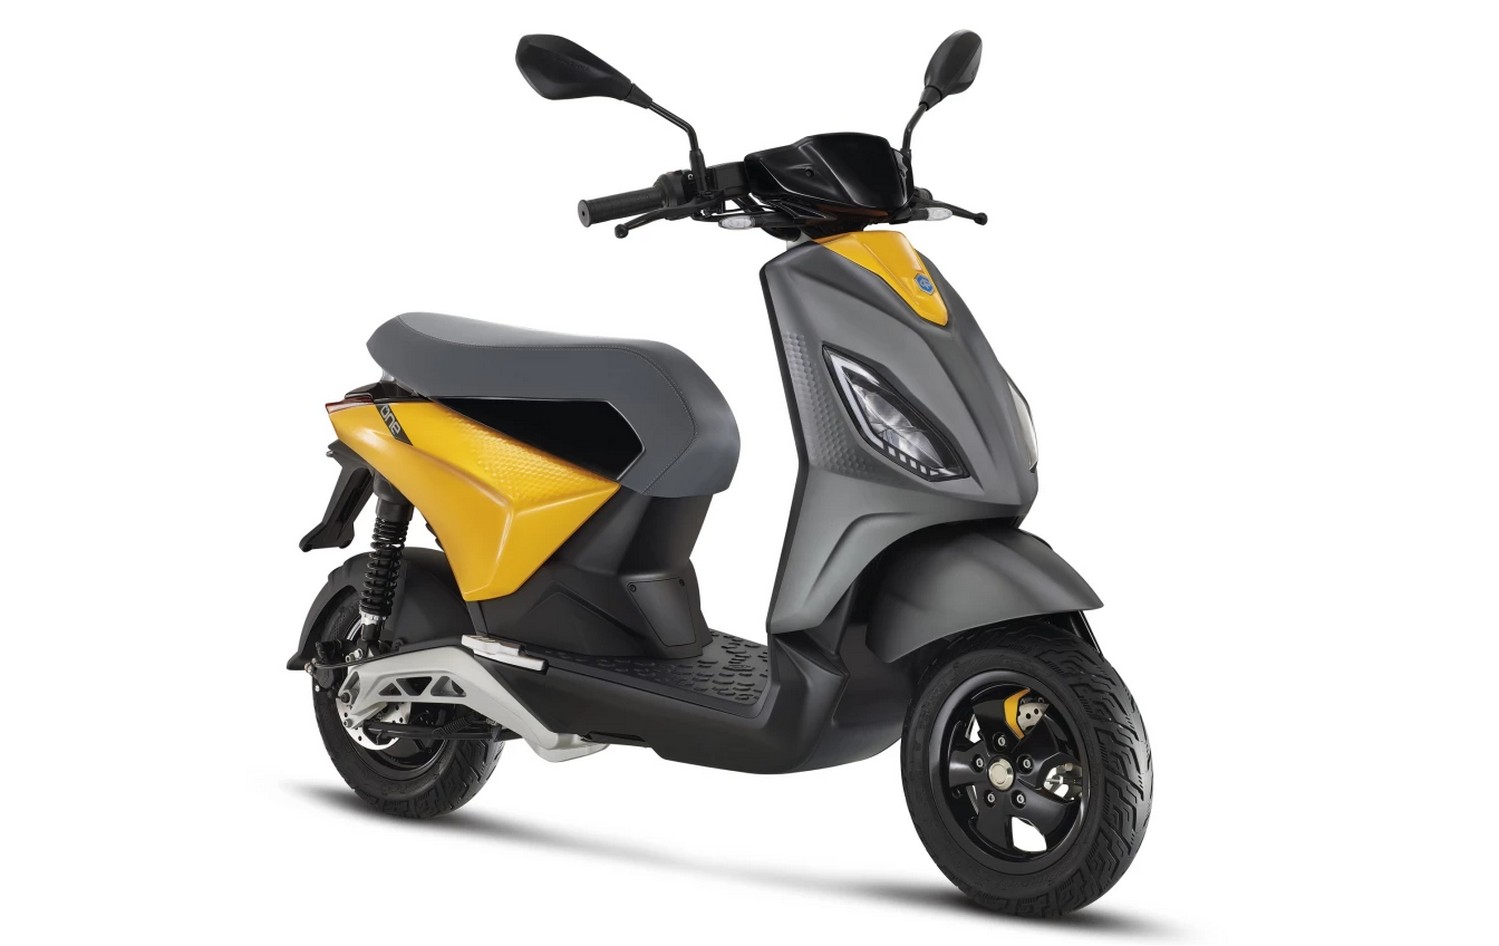 Le scooter électrique Piaggio One fera face à la redoutable concurrence des modèles chinois qui arrivent en masse sur le marché européen. © Piaggio